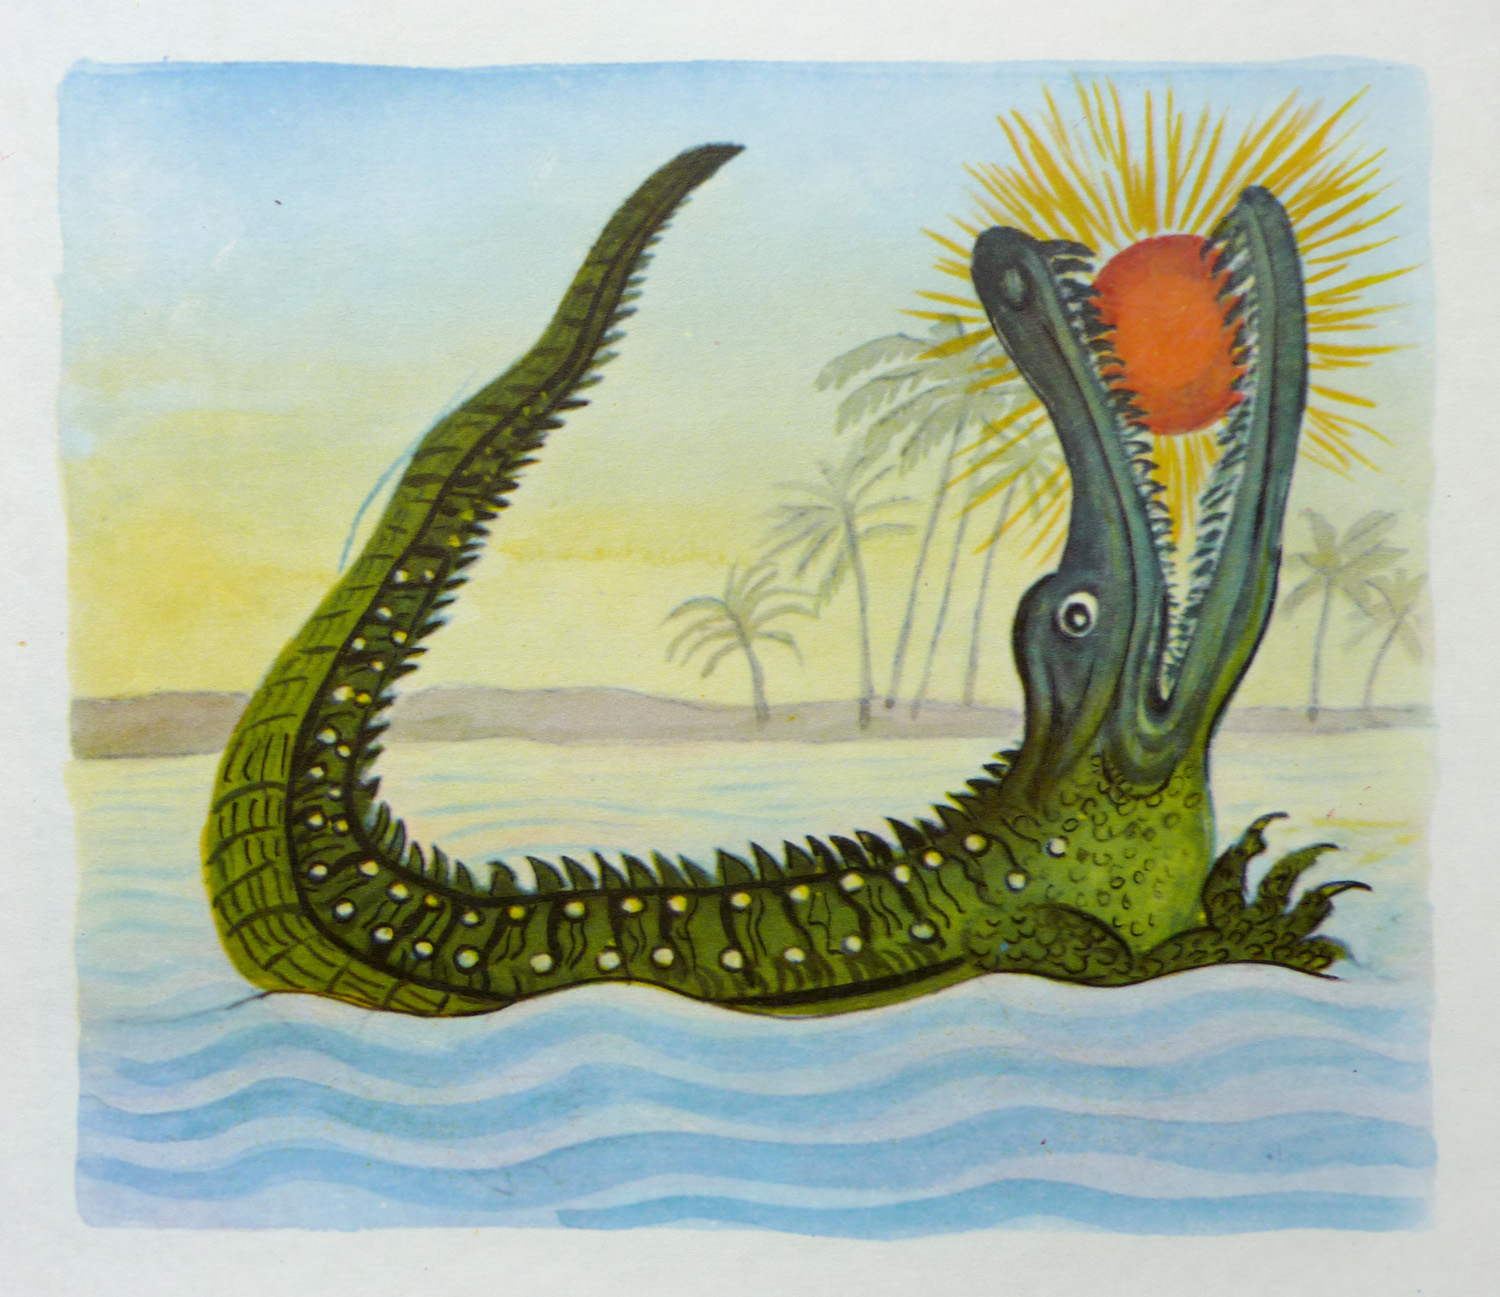 Украденное изображение. Крокодил солнце проглотил Чуковский. Солнце проглотил крокодил в сказке Чуковского.